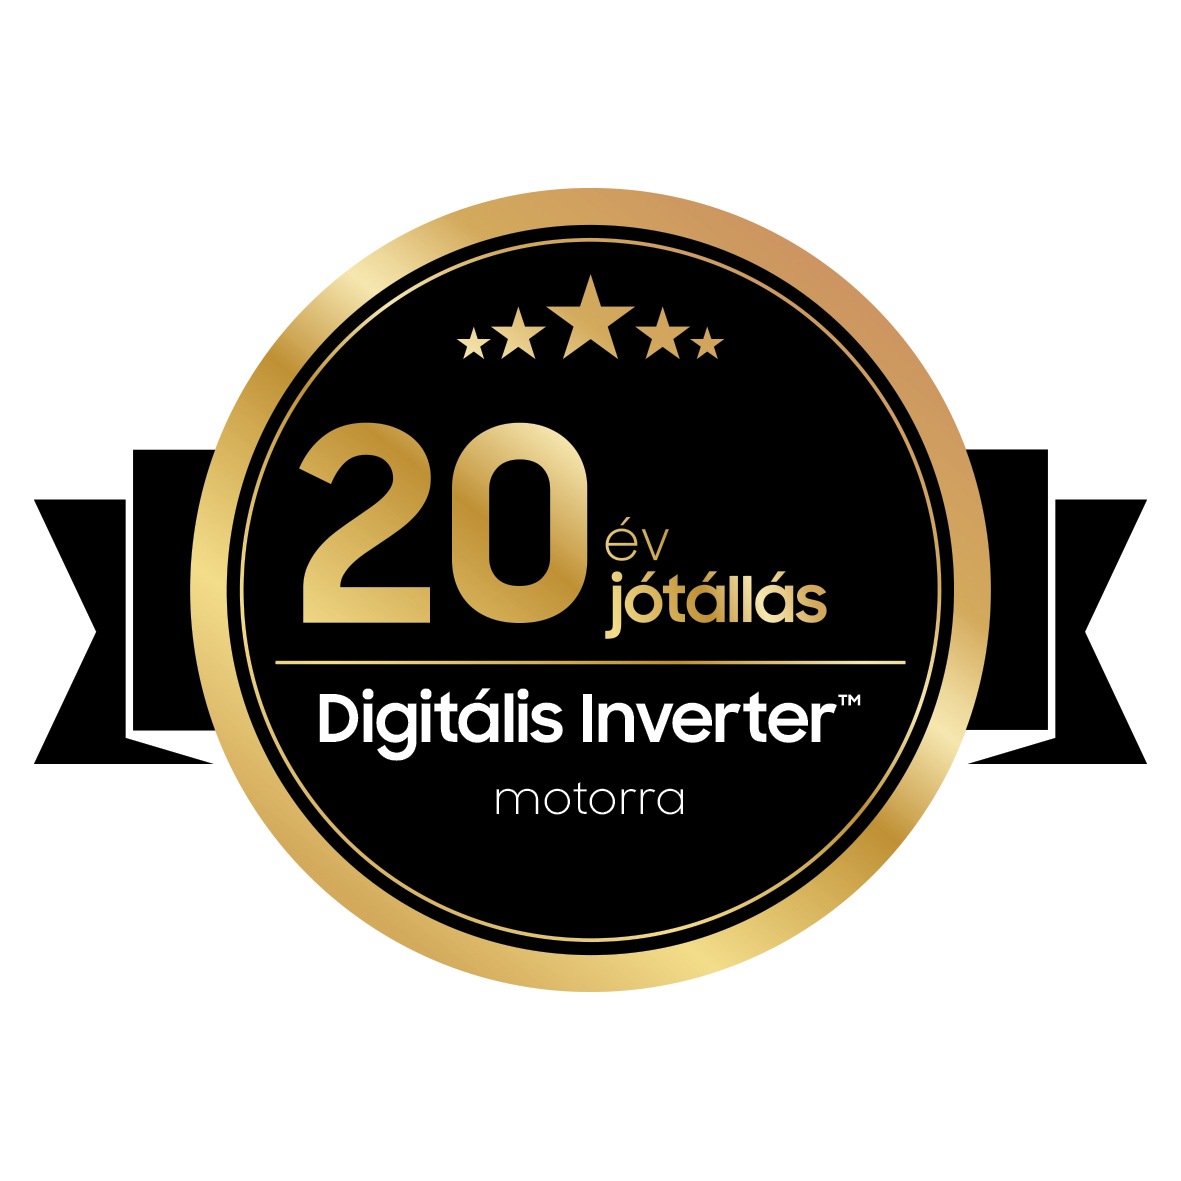 20 év jótállás Digitális Inverter™ motorra